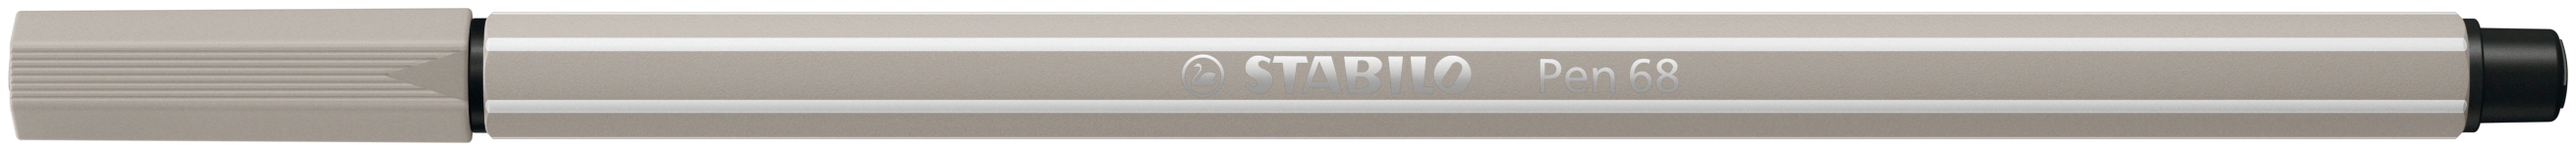 STABILO Stylo Fibre Pen 68 1-0mm 68/93 gris chaude